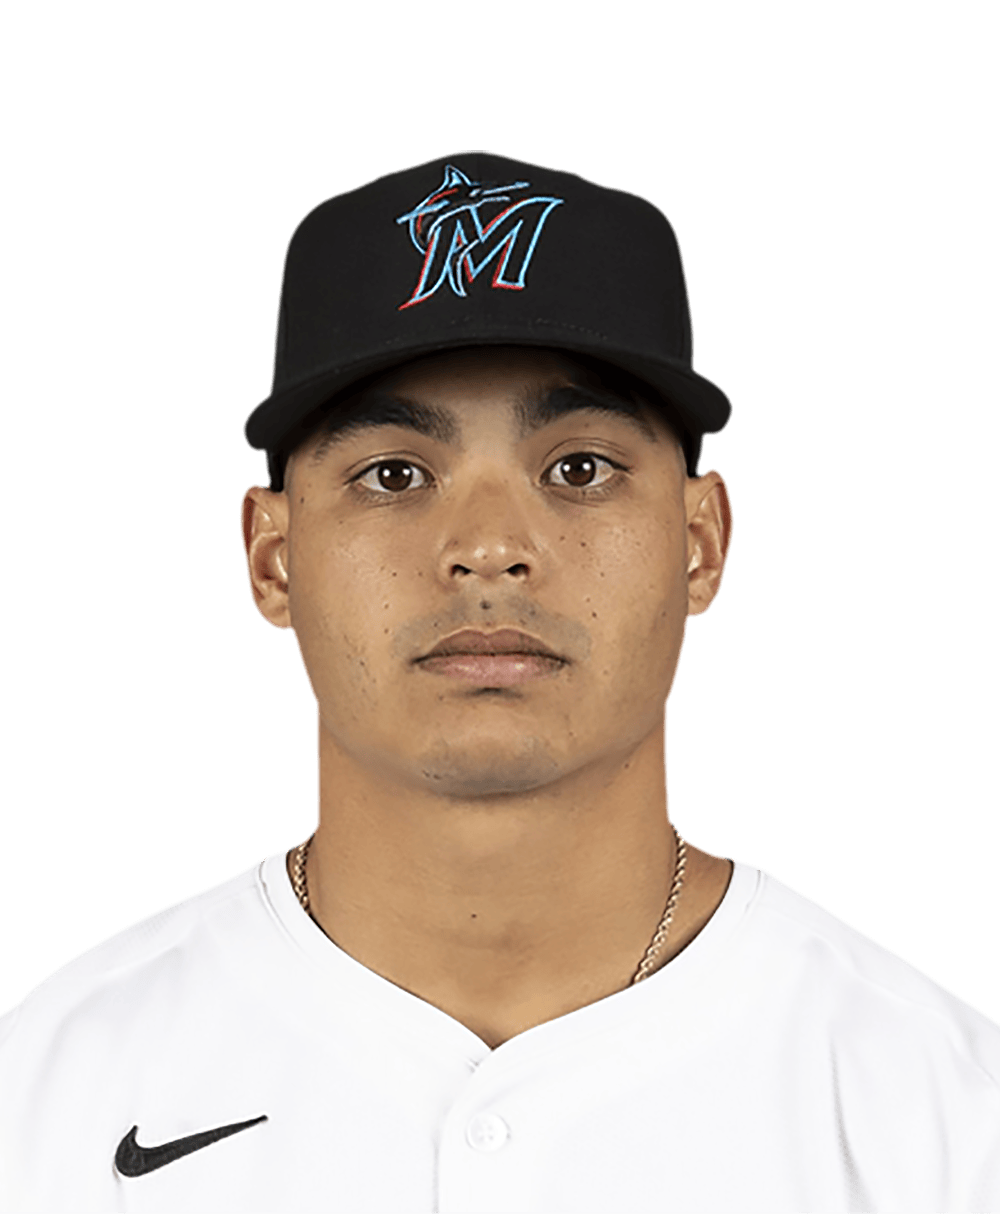 Jesús Luzardo - MLB News, Rumors, & Updates